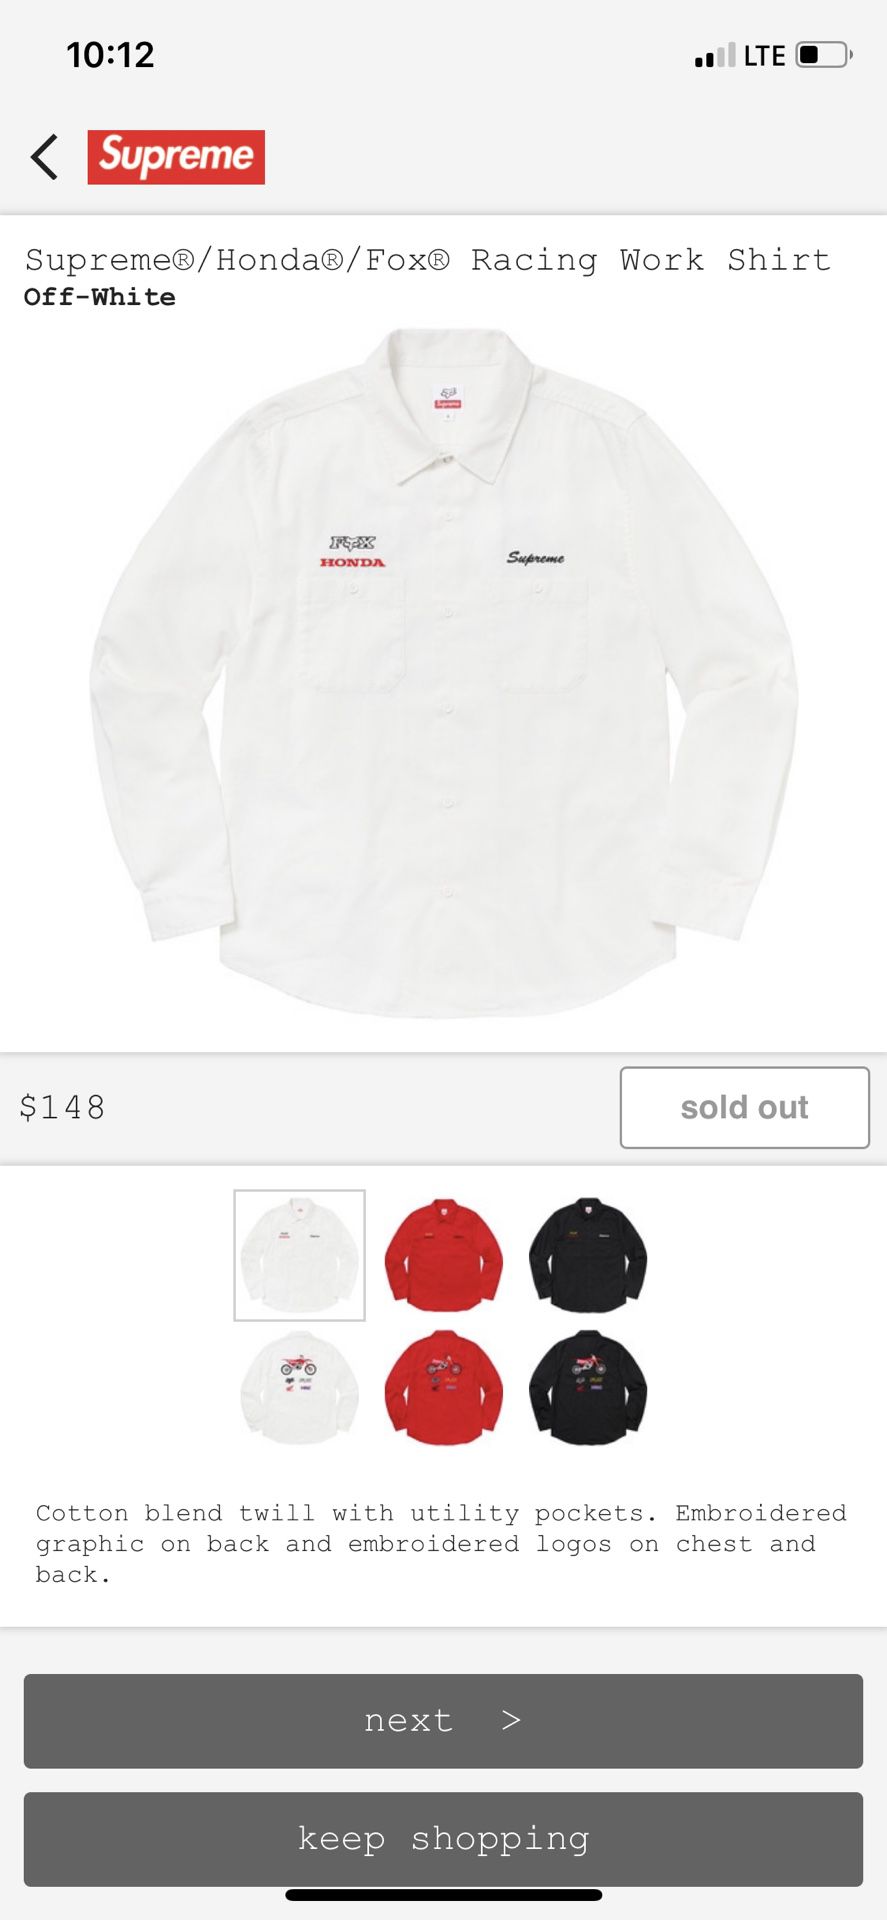 Supreme Honda Fox Racing work shirt. White. (In Hand)